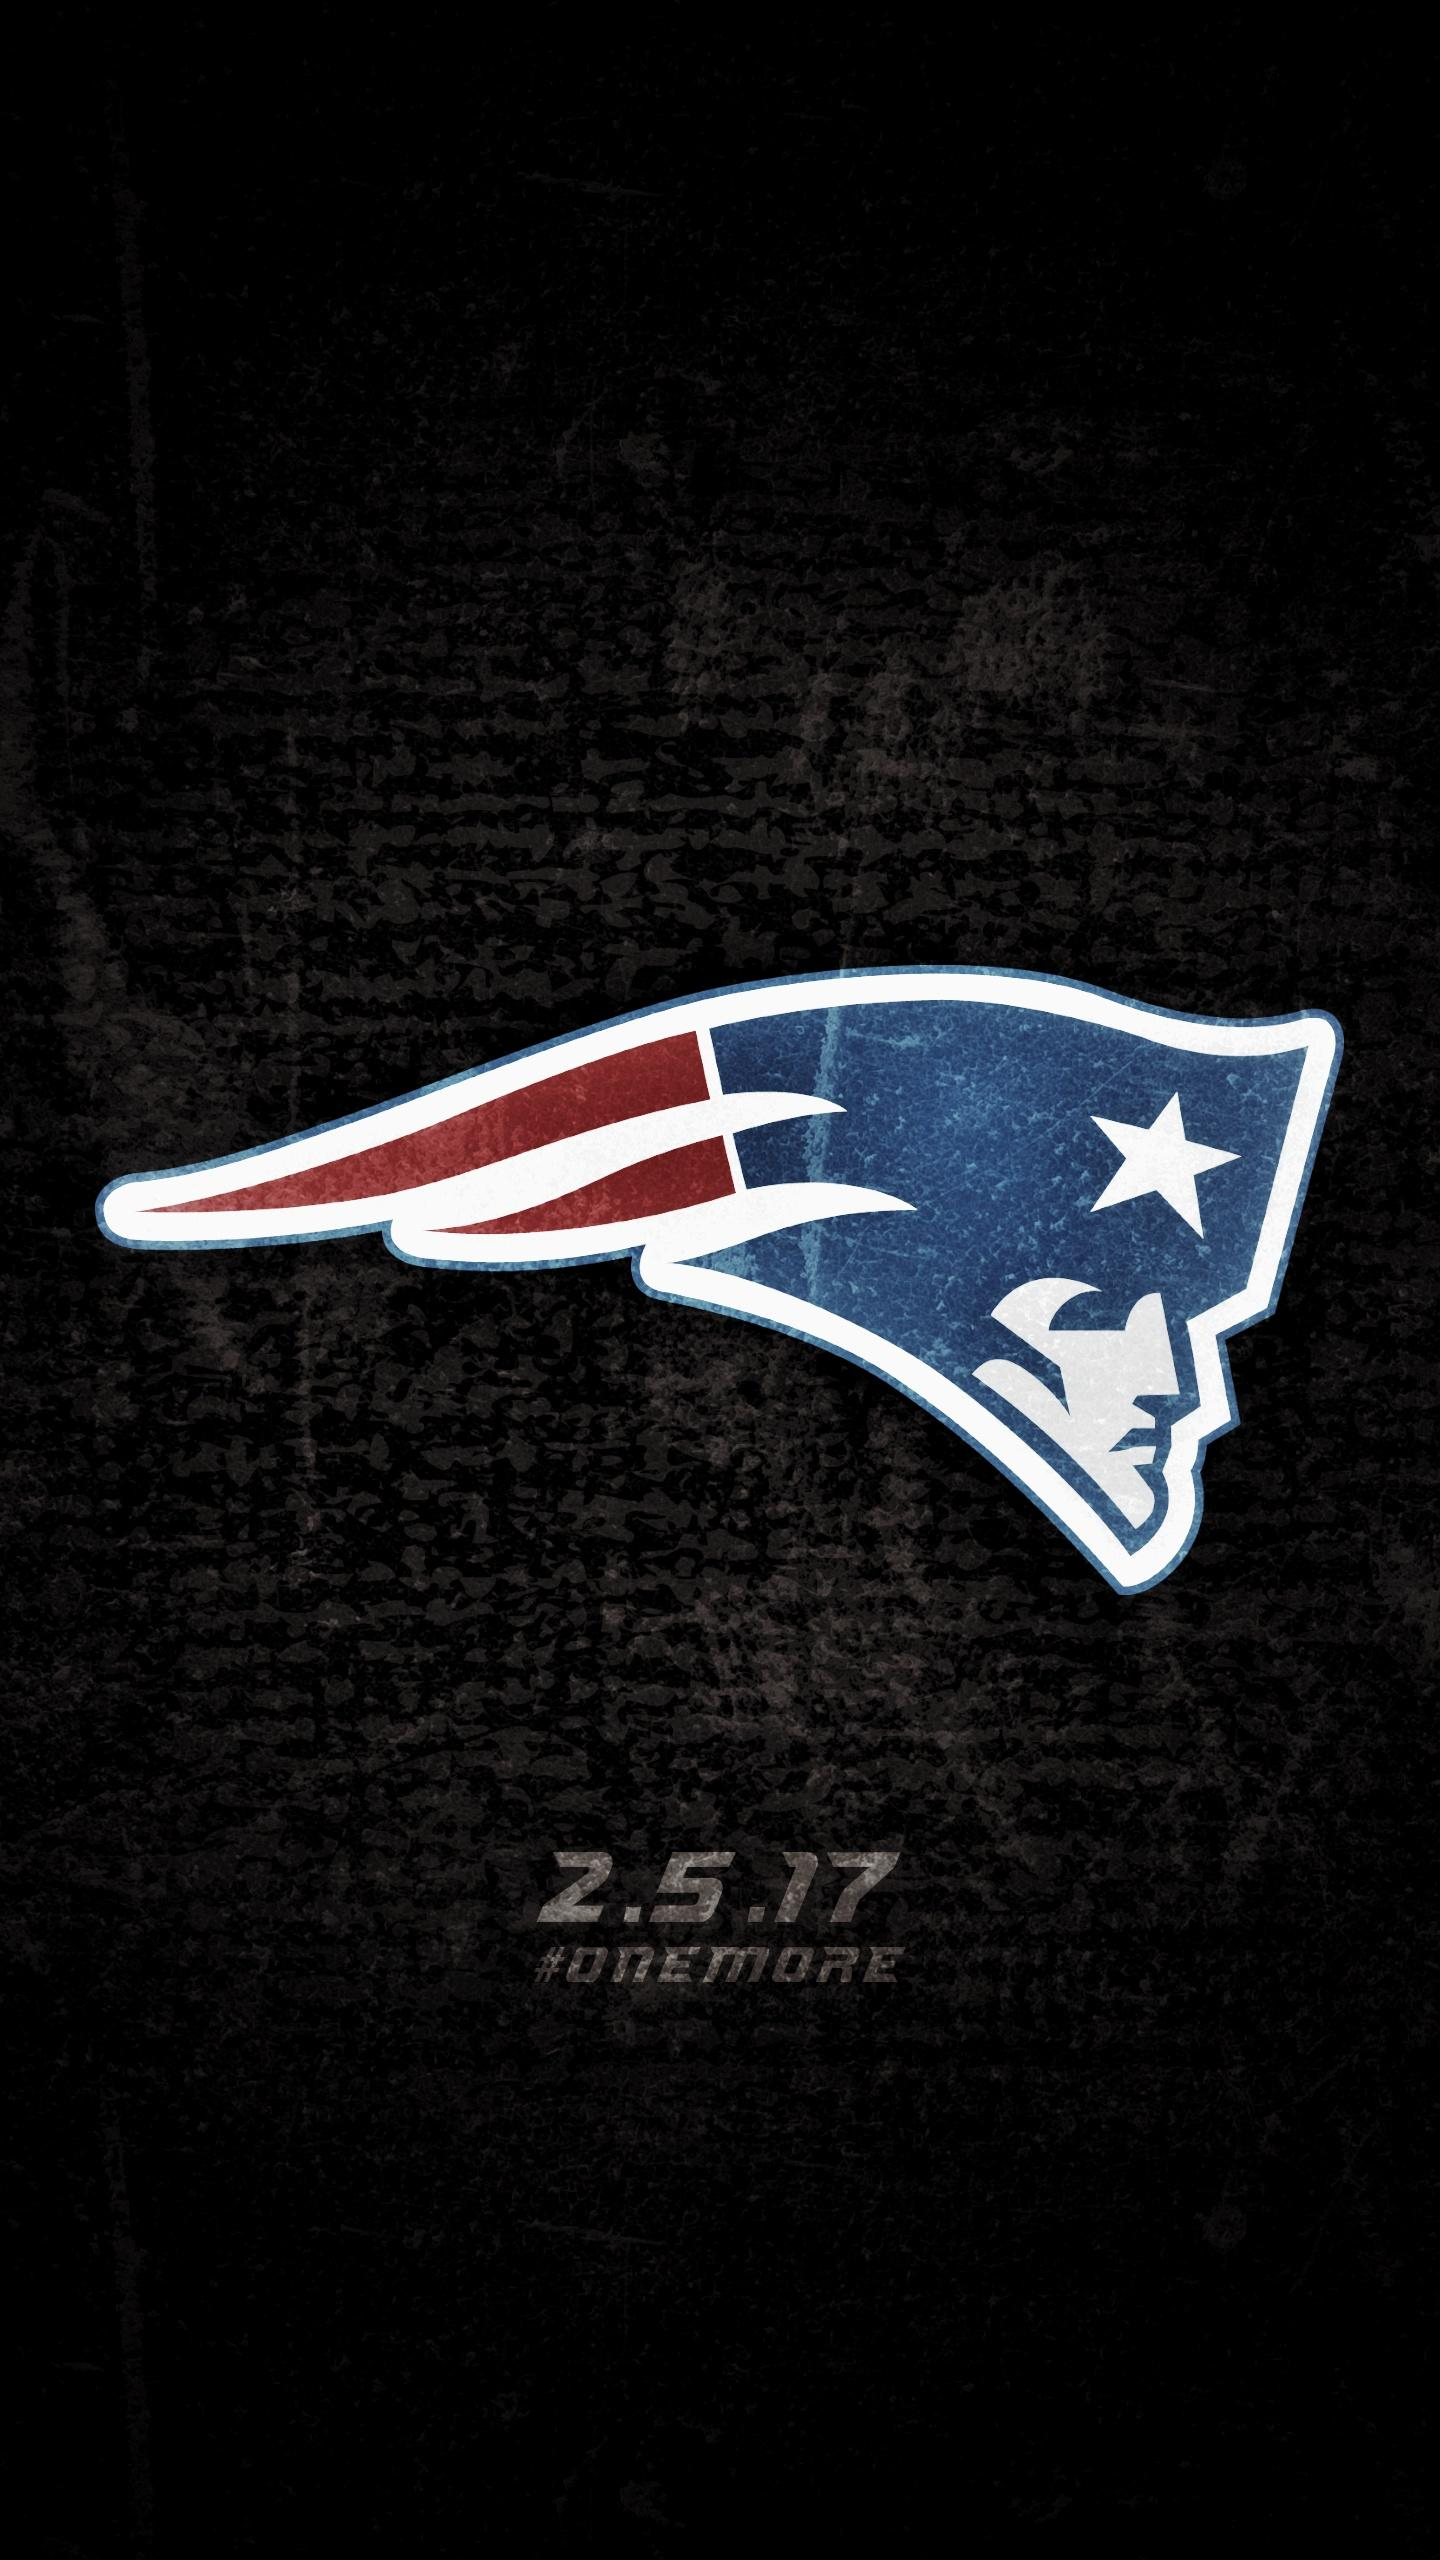 1440x2560 Patriots Super Bowl Wallpapers Top Free Patriots Super Bowl Backgrounds